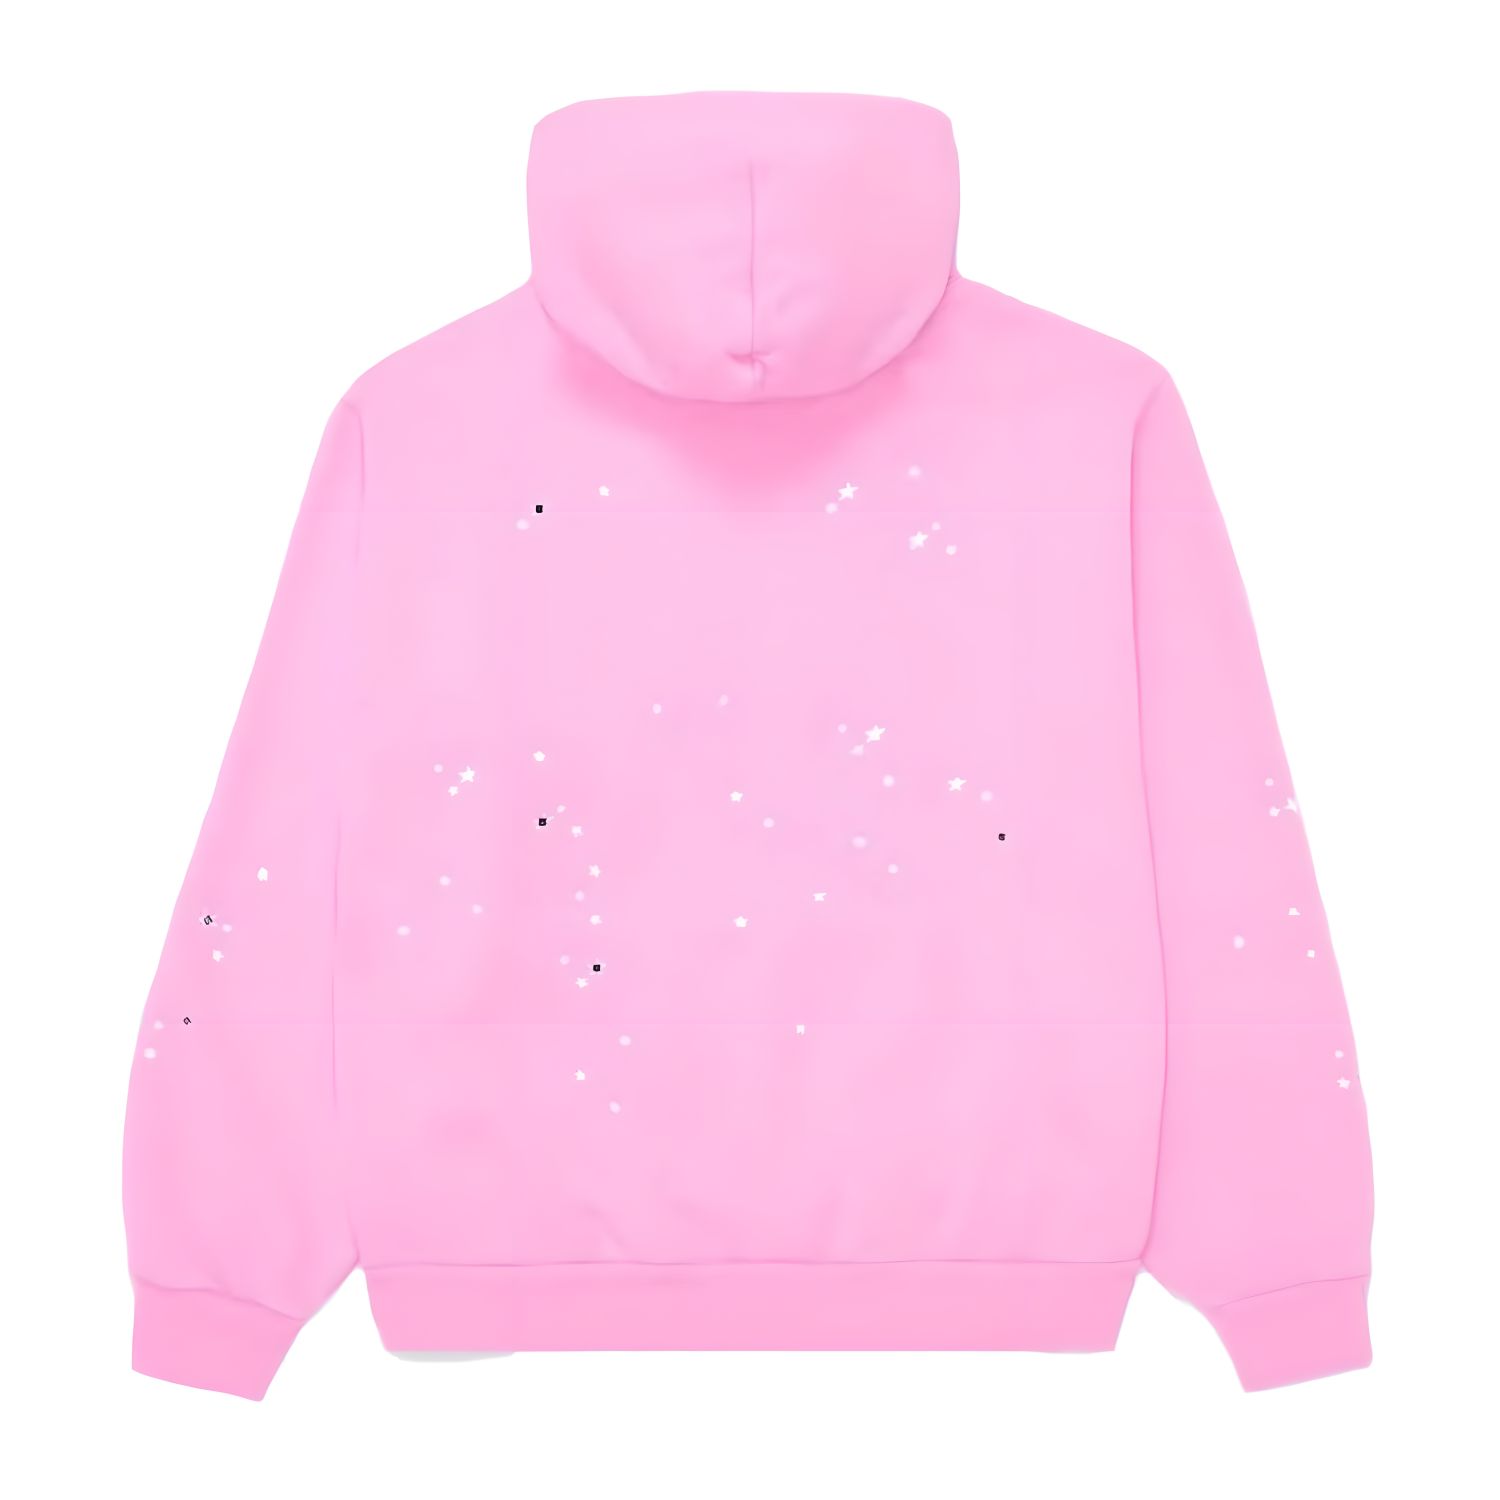 Mens Hoodies Sweatshirts Sp5der 555555 Atlanta Pink Hoodie Men